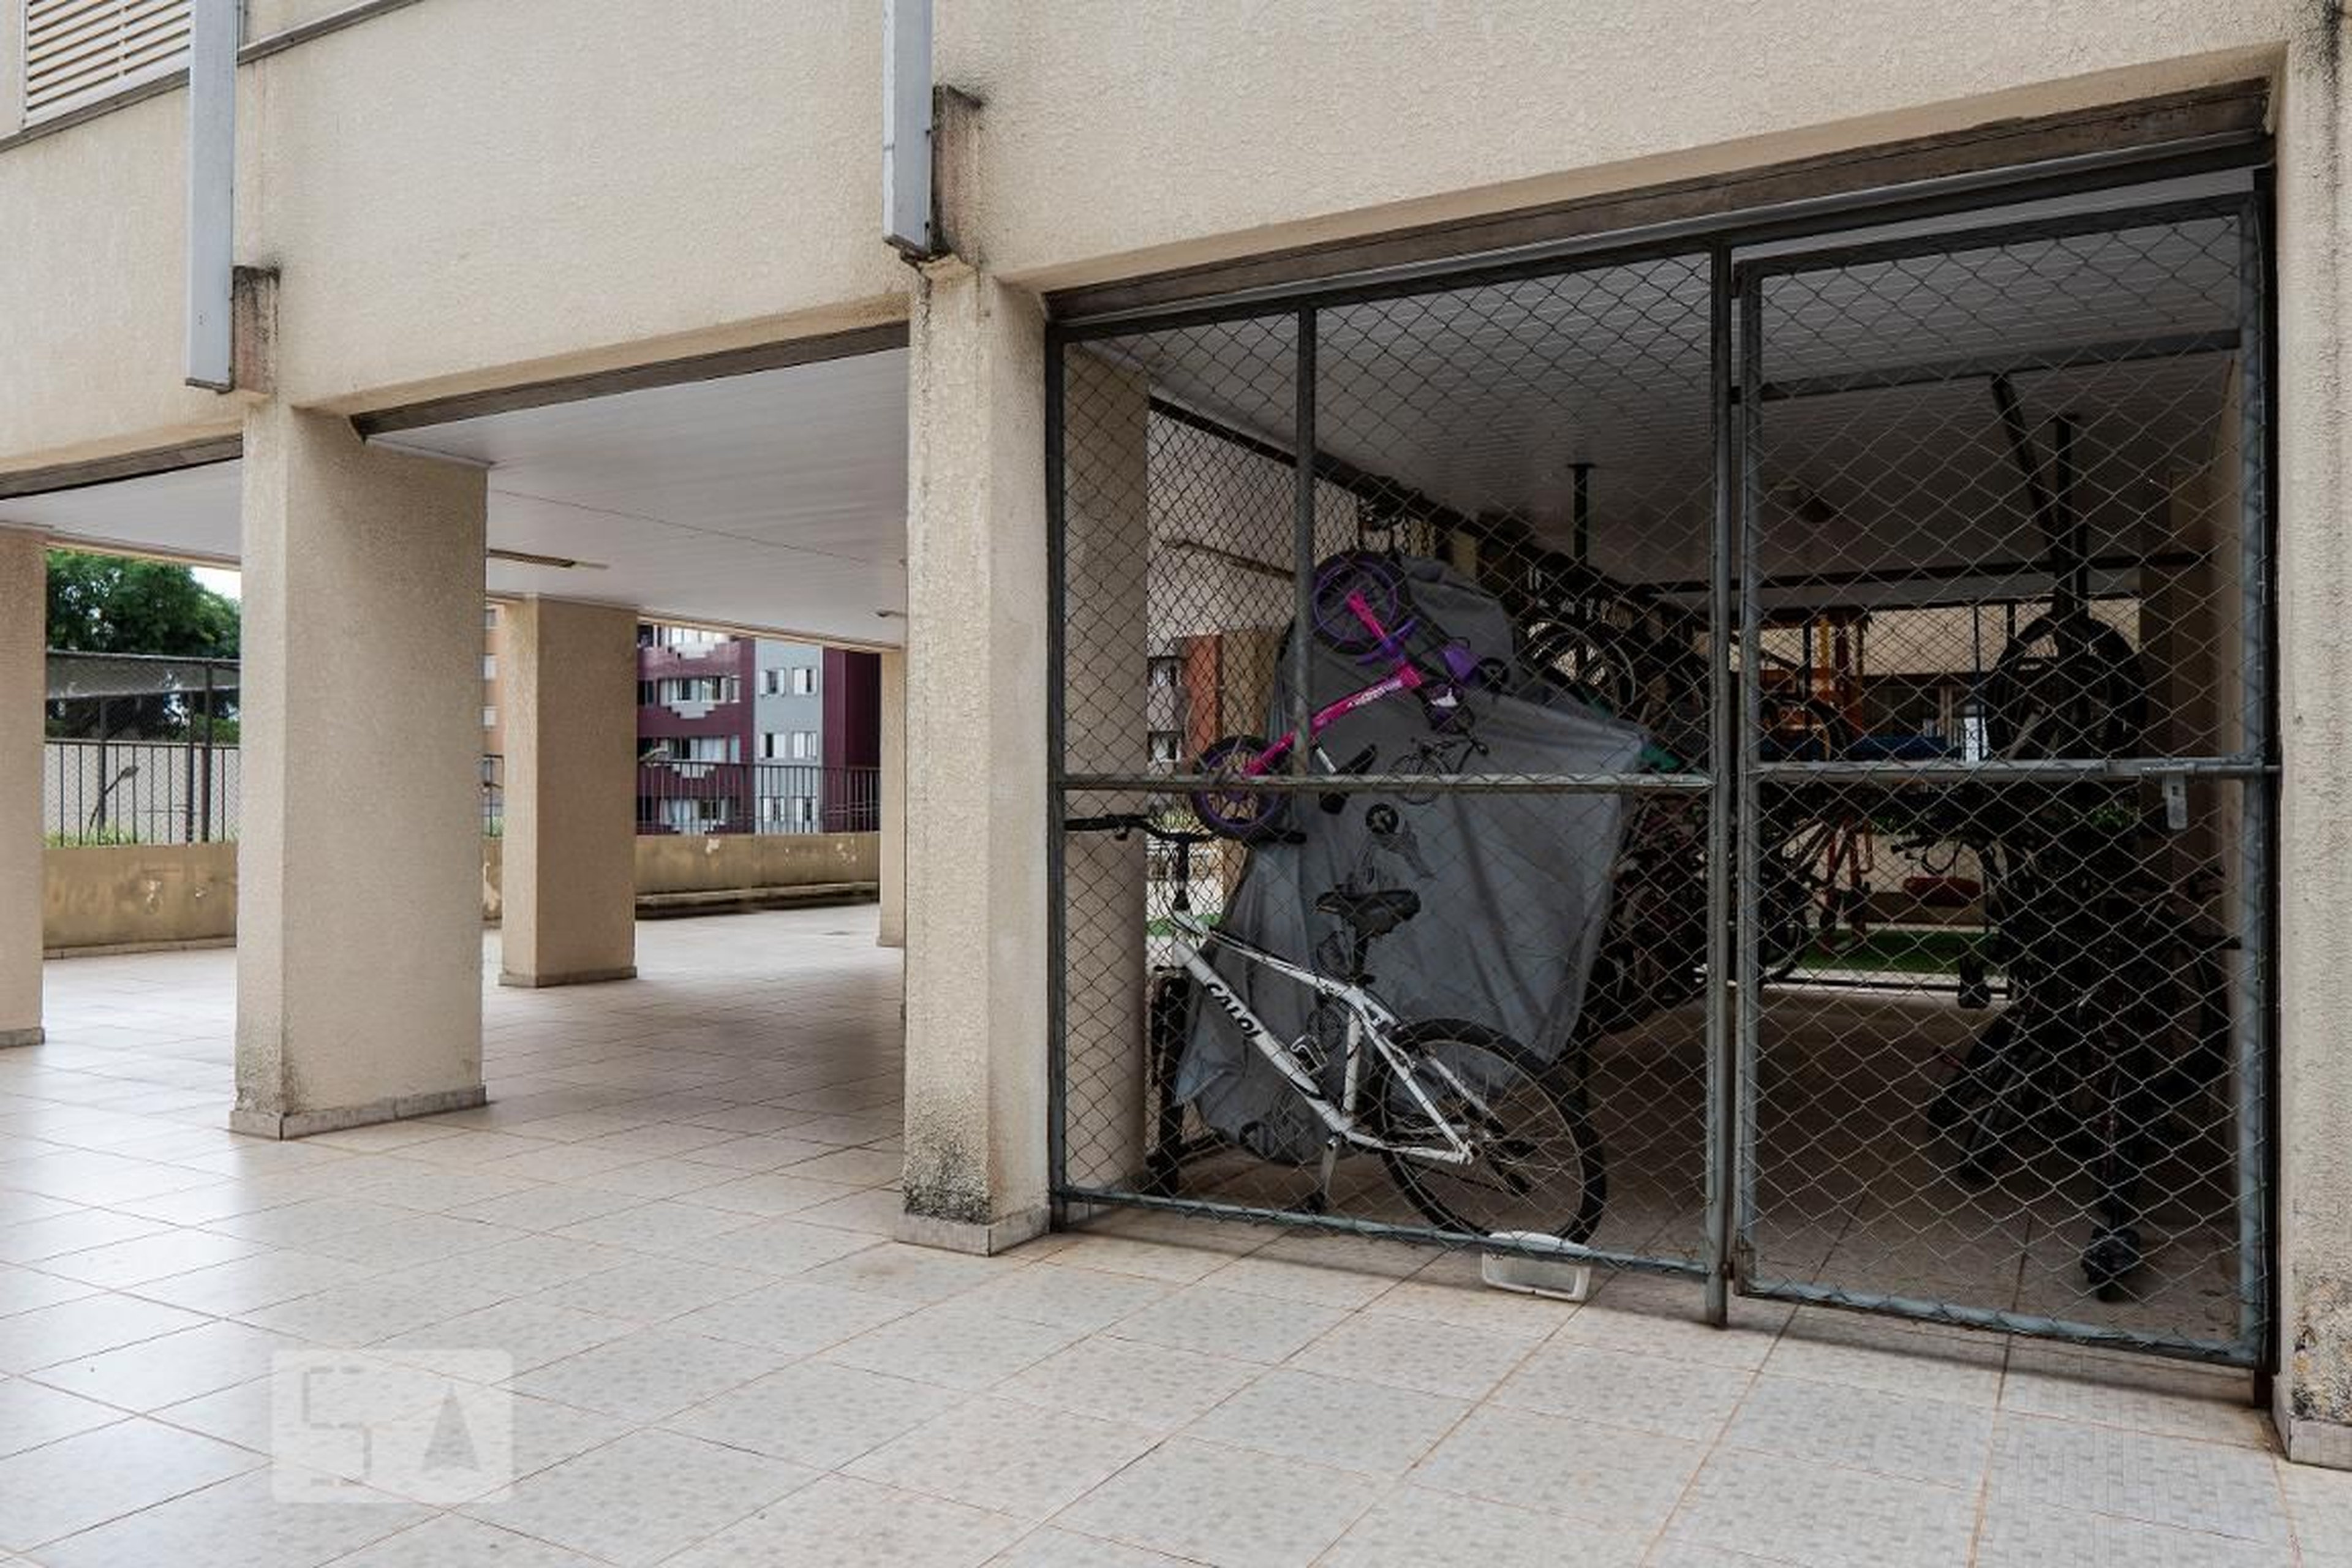 Bicicletário - Edifício Gonçalves Dias